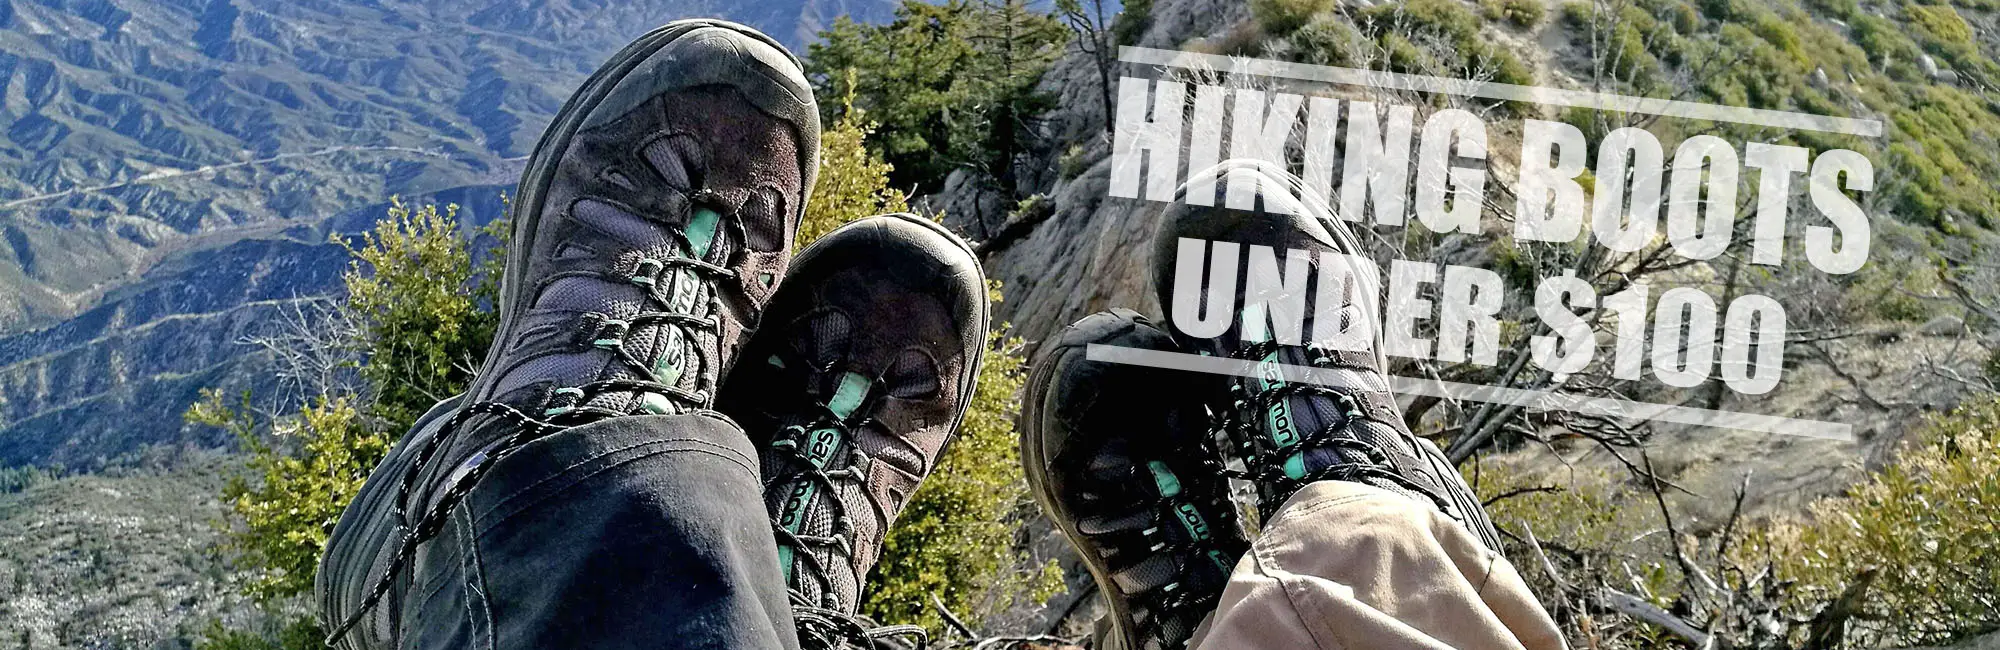 Best hiking boots under 100 header